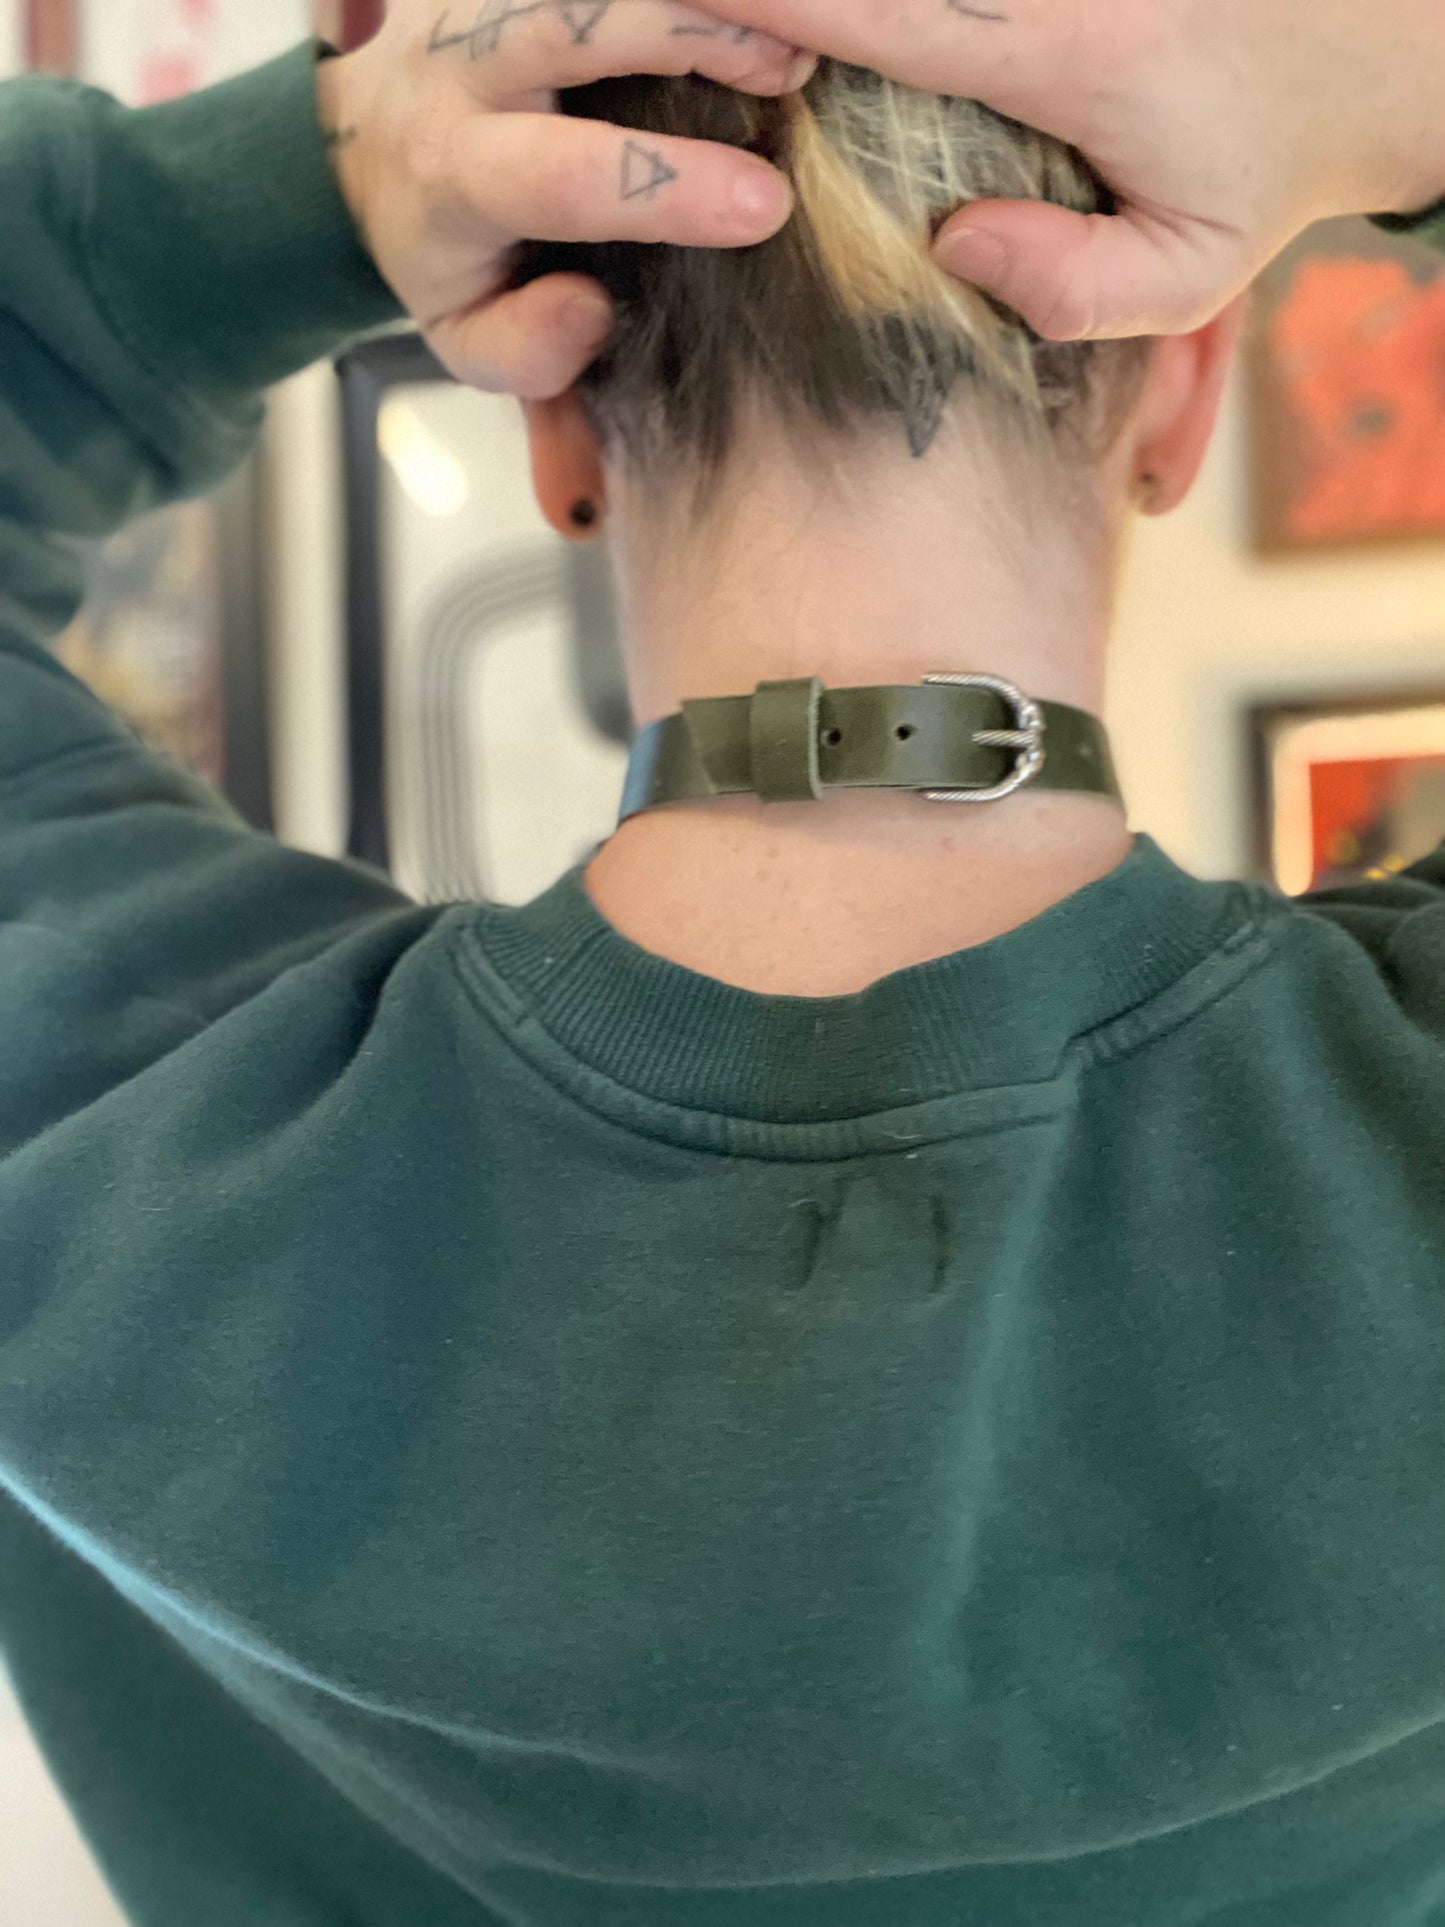 Olive Ouroboros collar w fidget chain